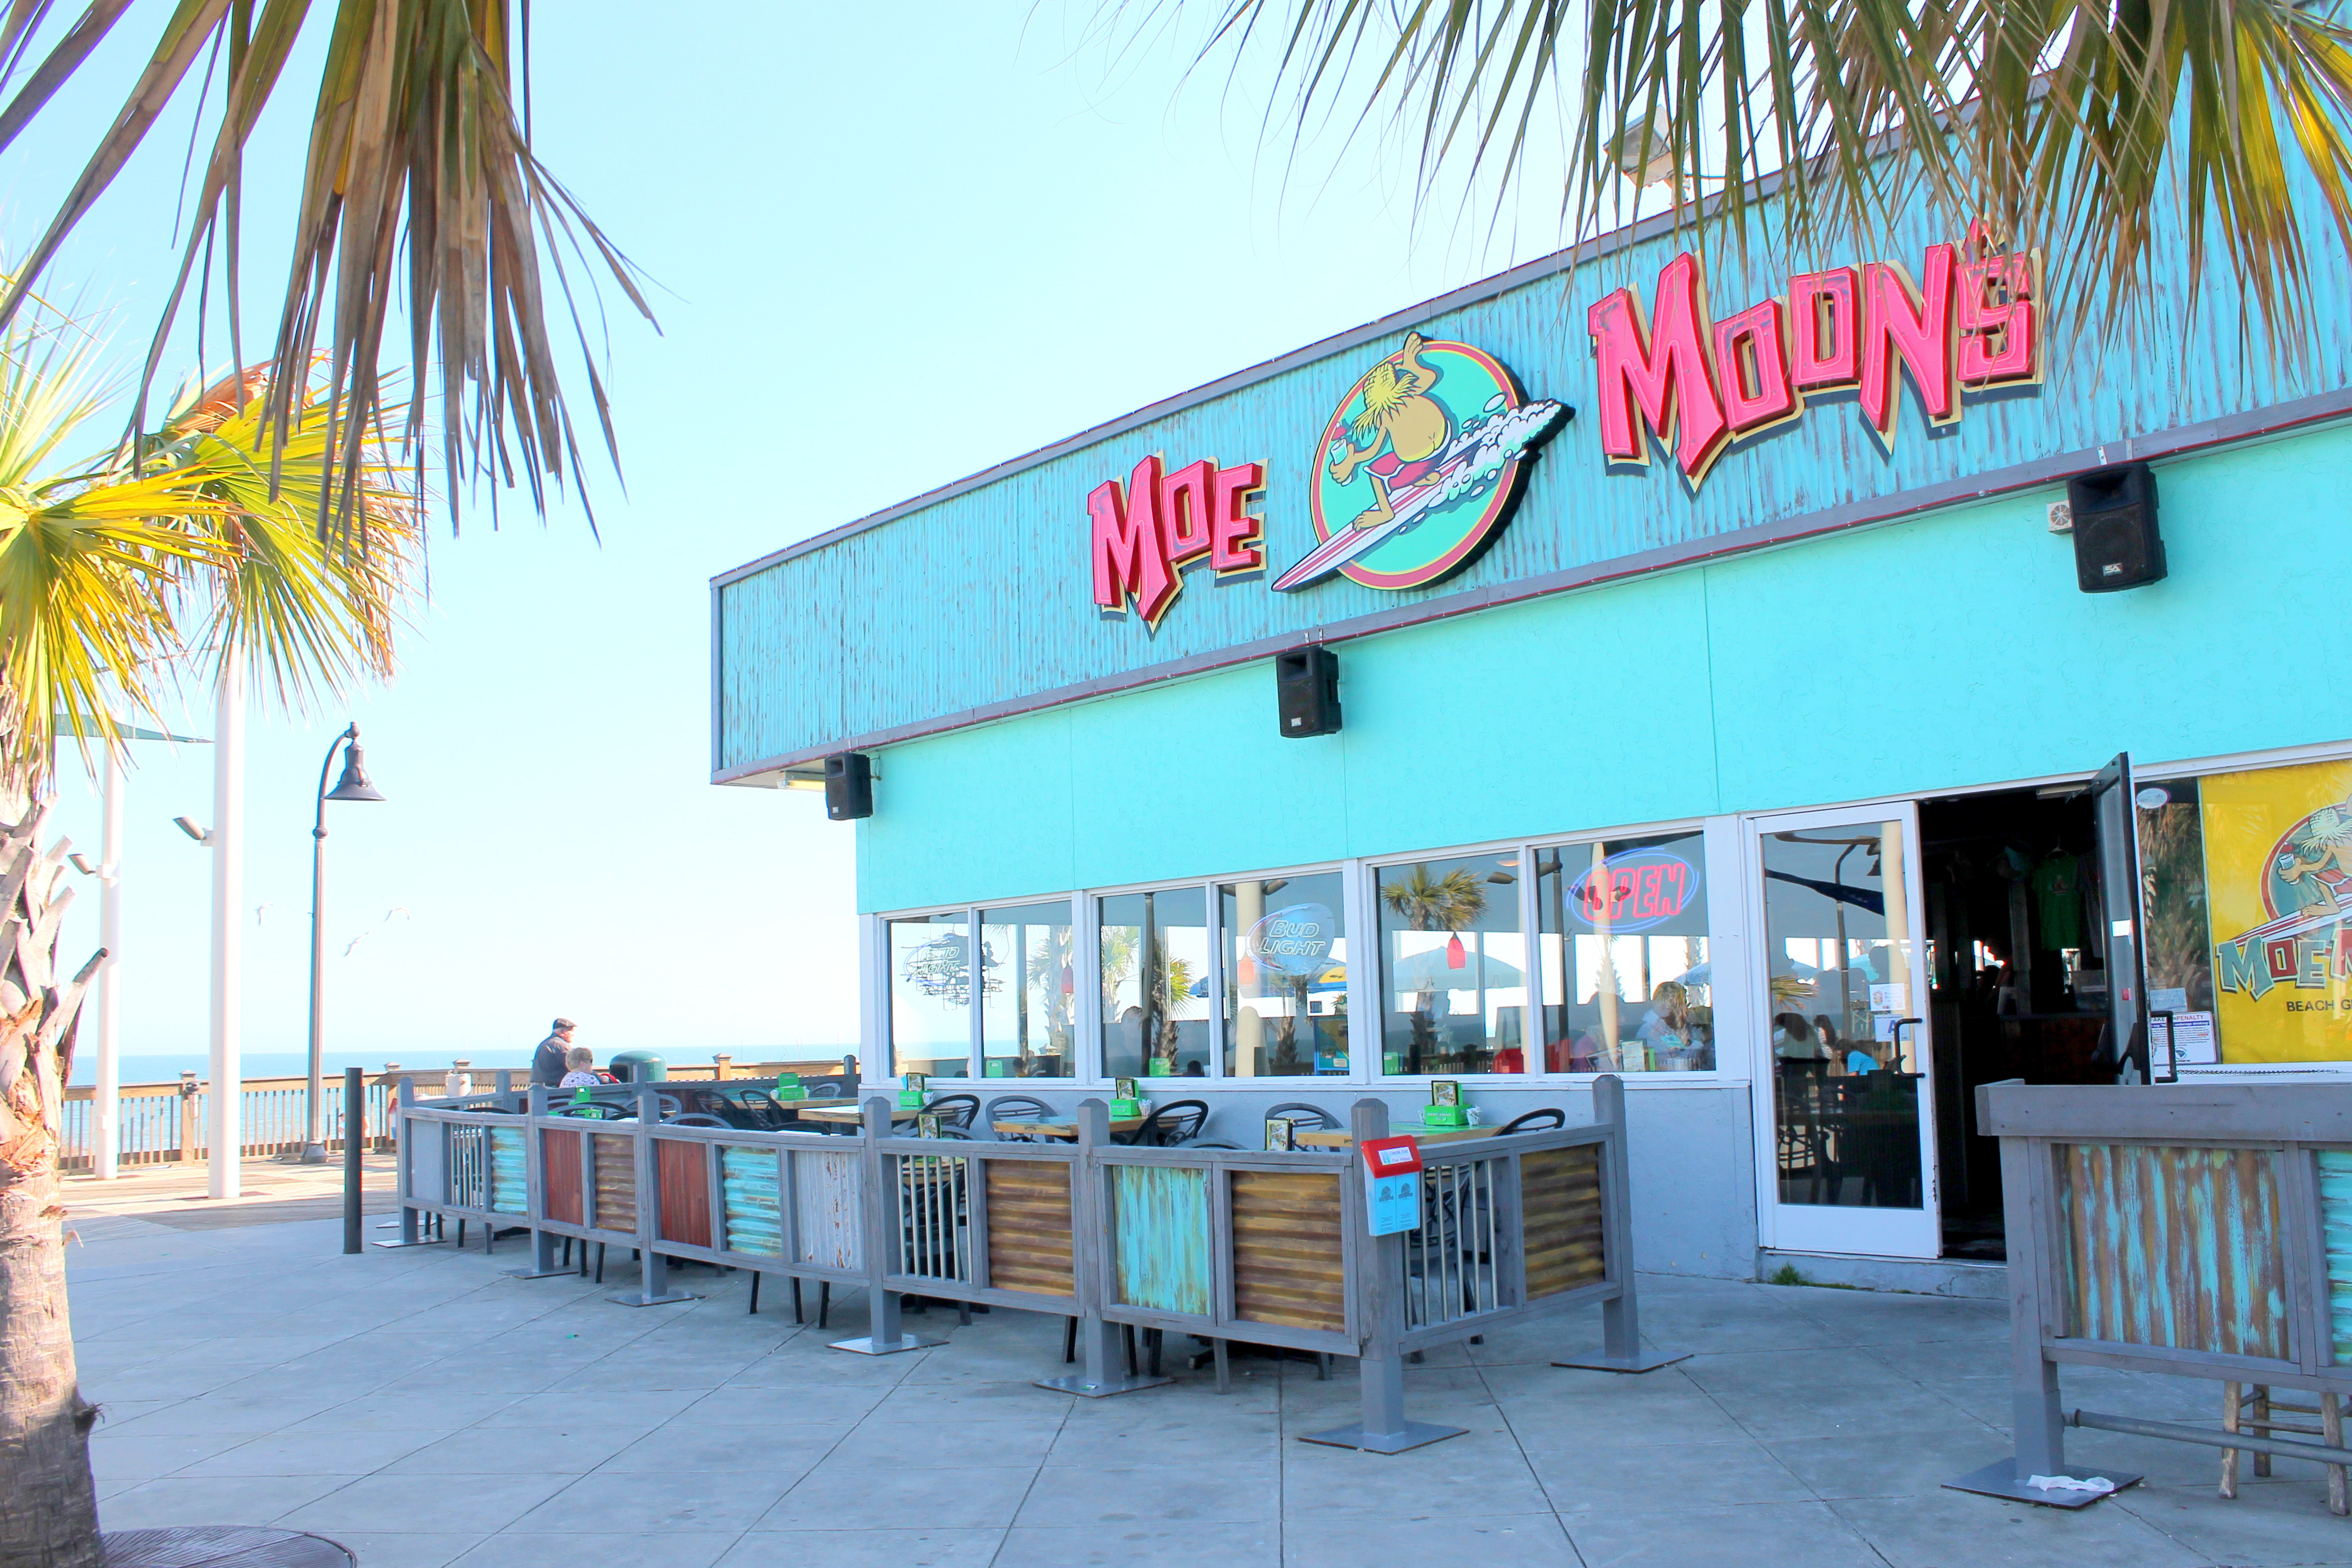 Moe Moon's